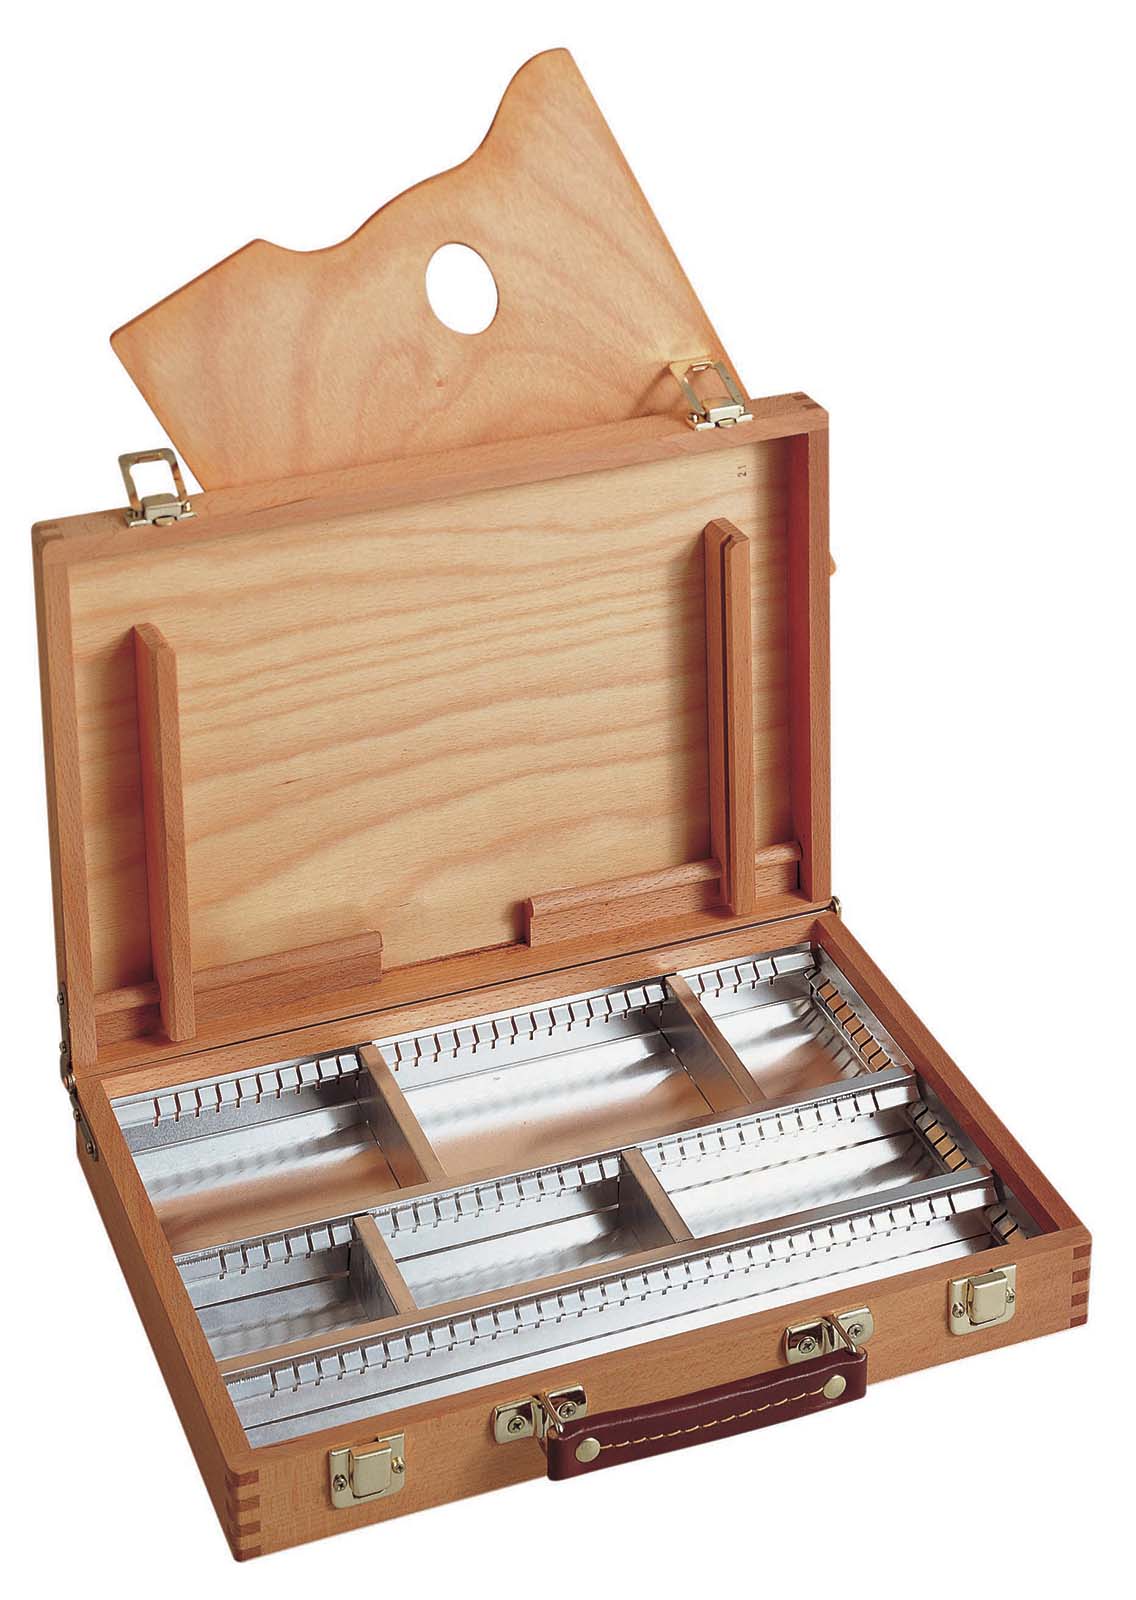 Ящик для красок 25х35см деревянный с металической кассетницей по 15 920.00 руб от Mabef